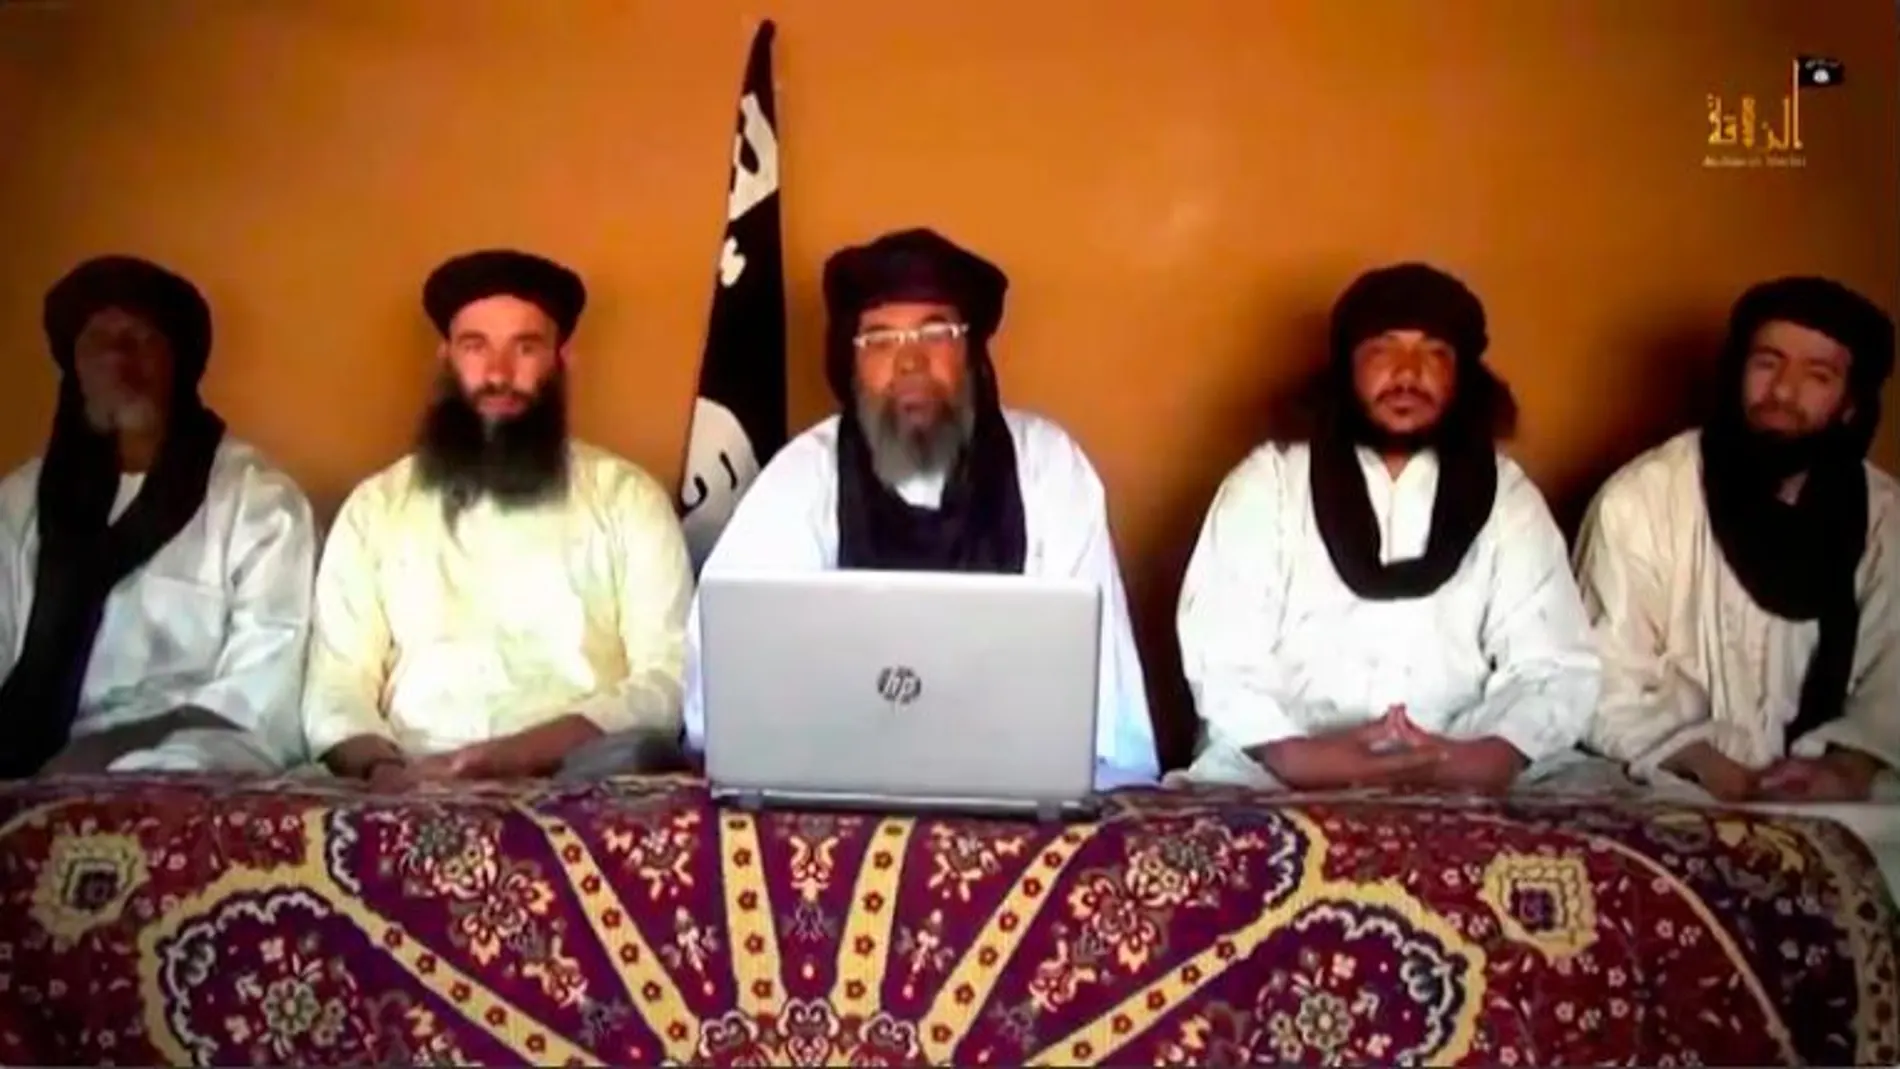 Dirigentes del JNIM, la facción de Al Qaeda en el Sahel